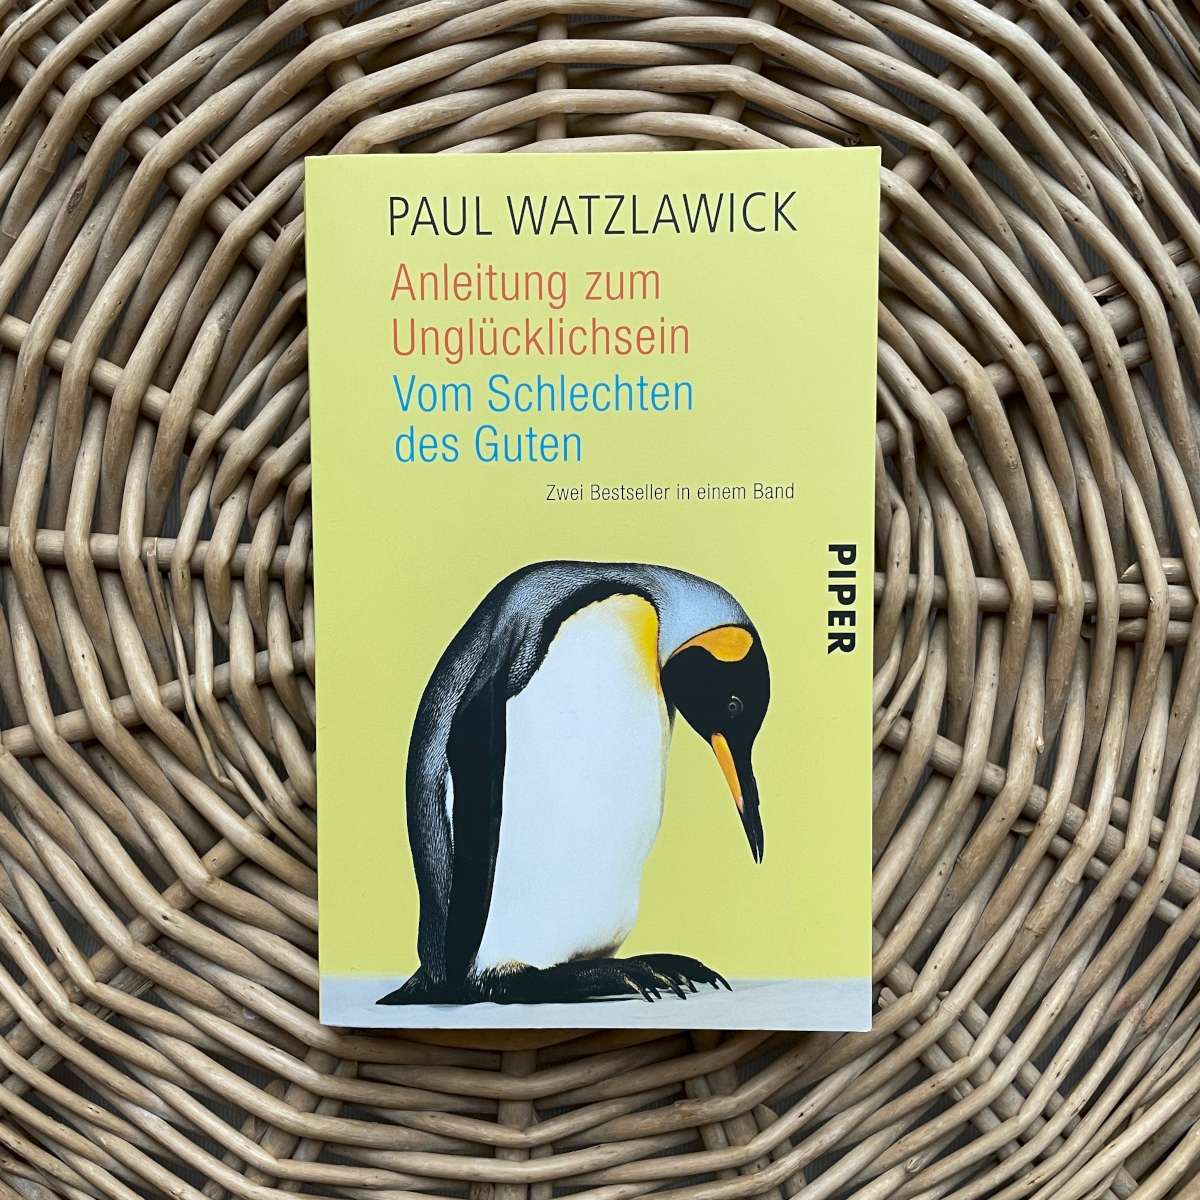 Buch von Paul Watzlawick – Vom Schlechten des Guten